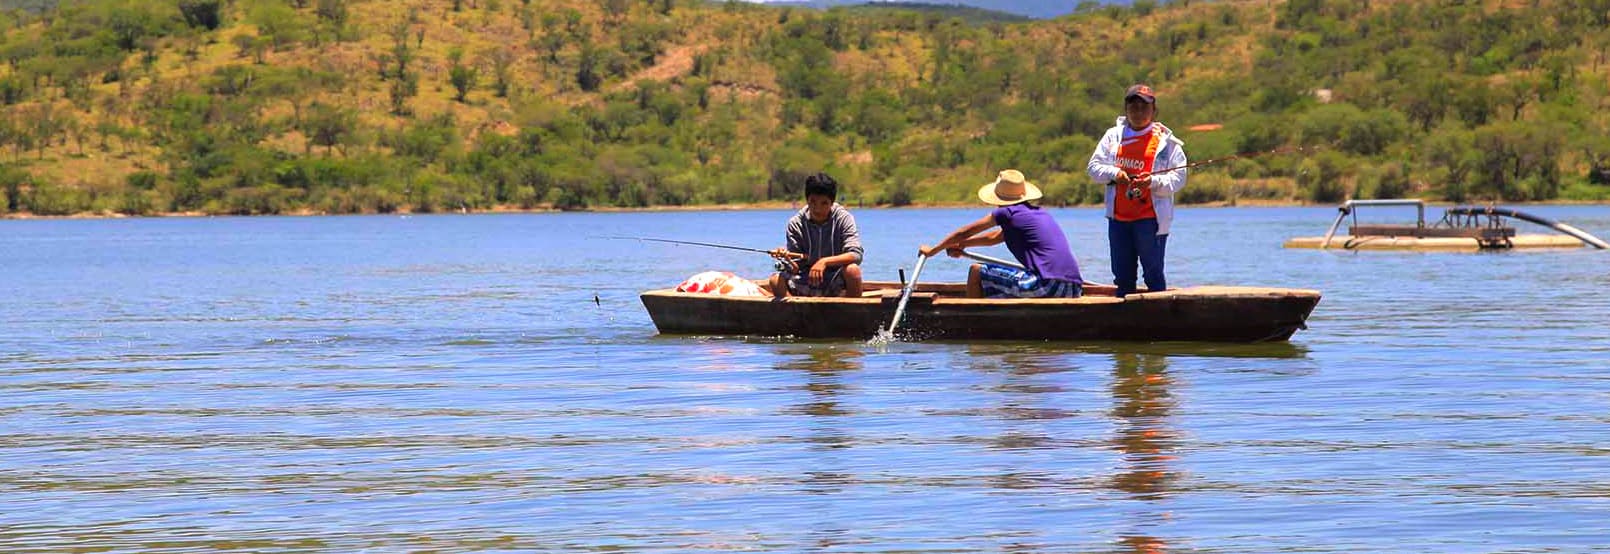 Pesca en Oaxaca